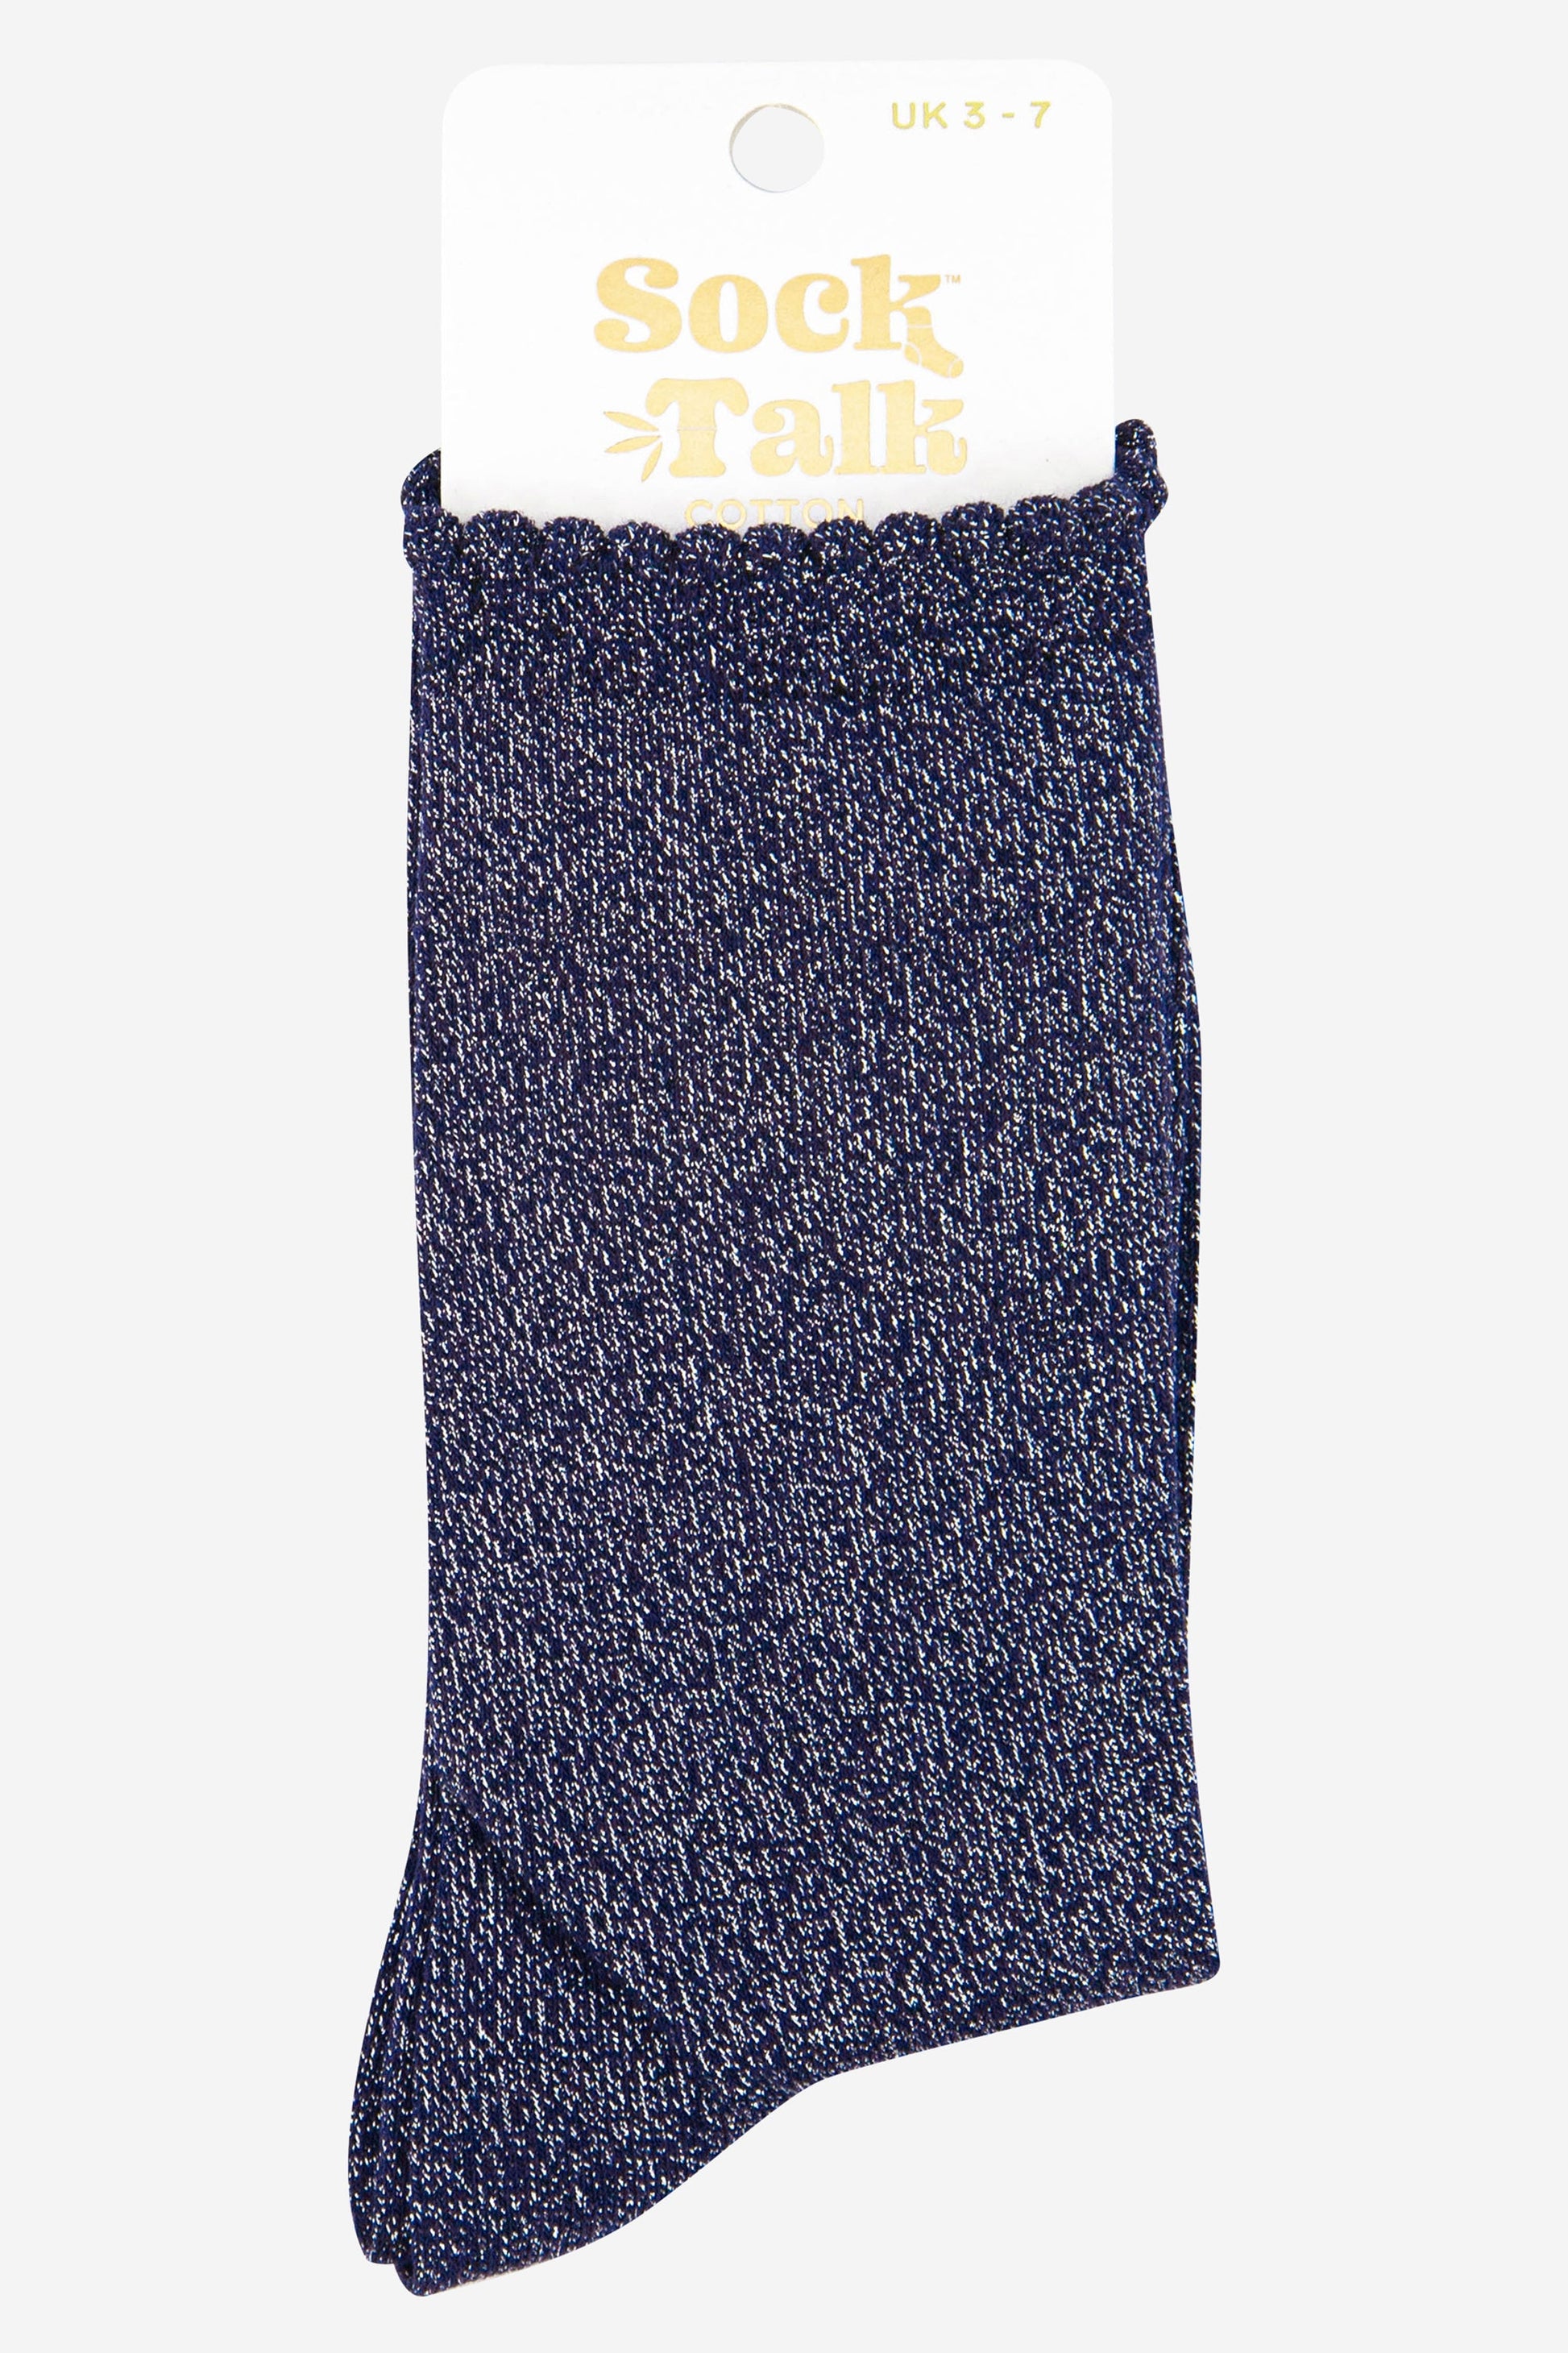 navy blue and silver glitter sparkle socks uk size 3-7